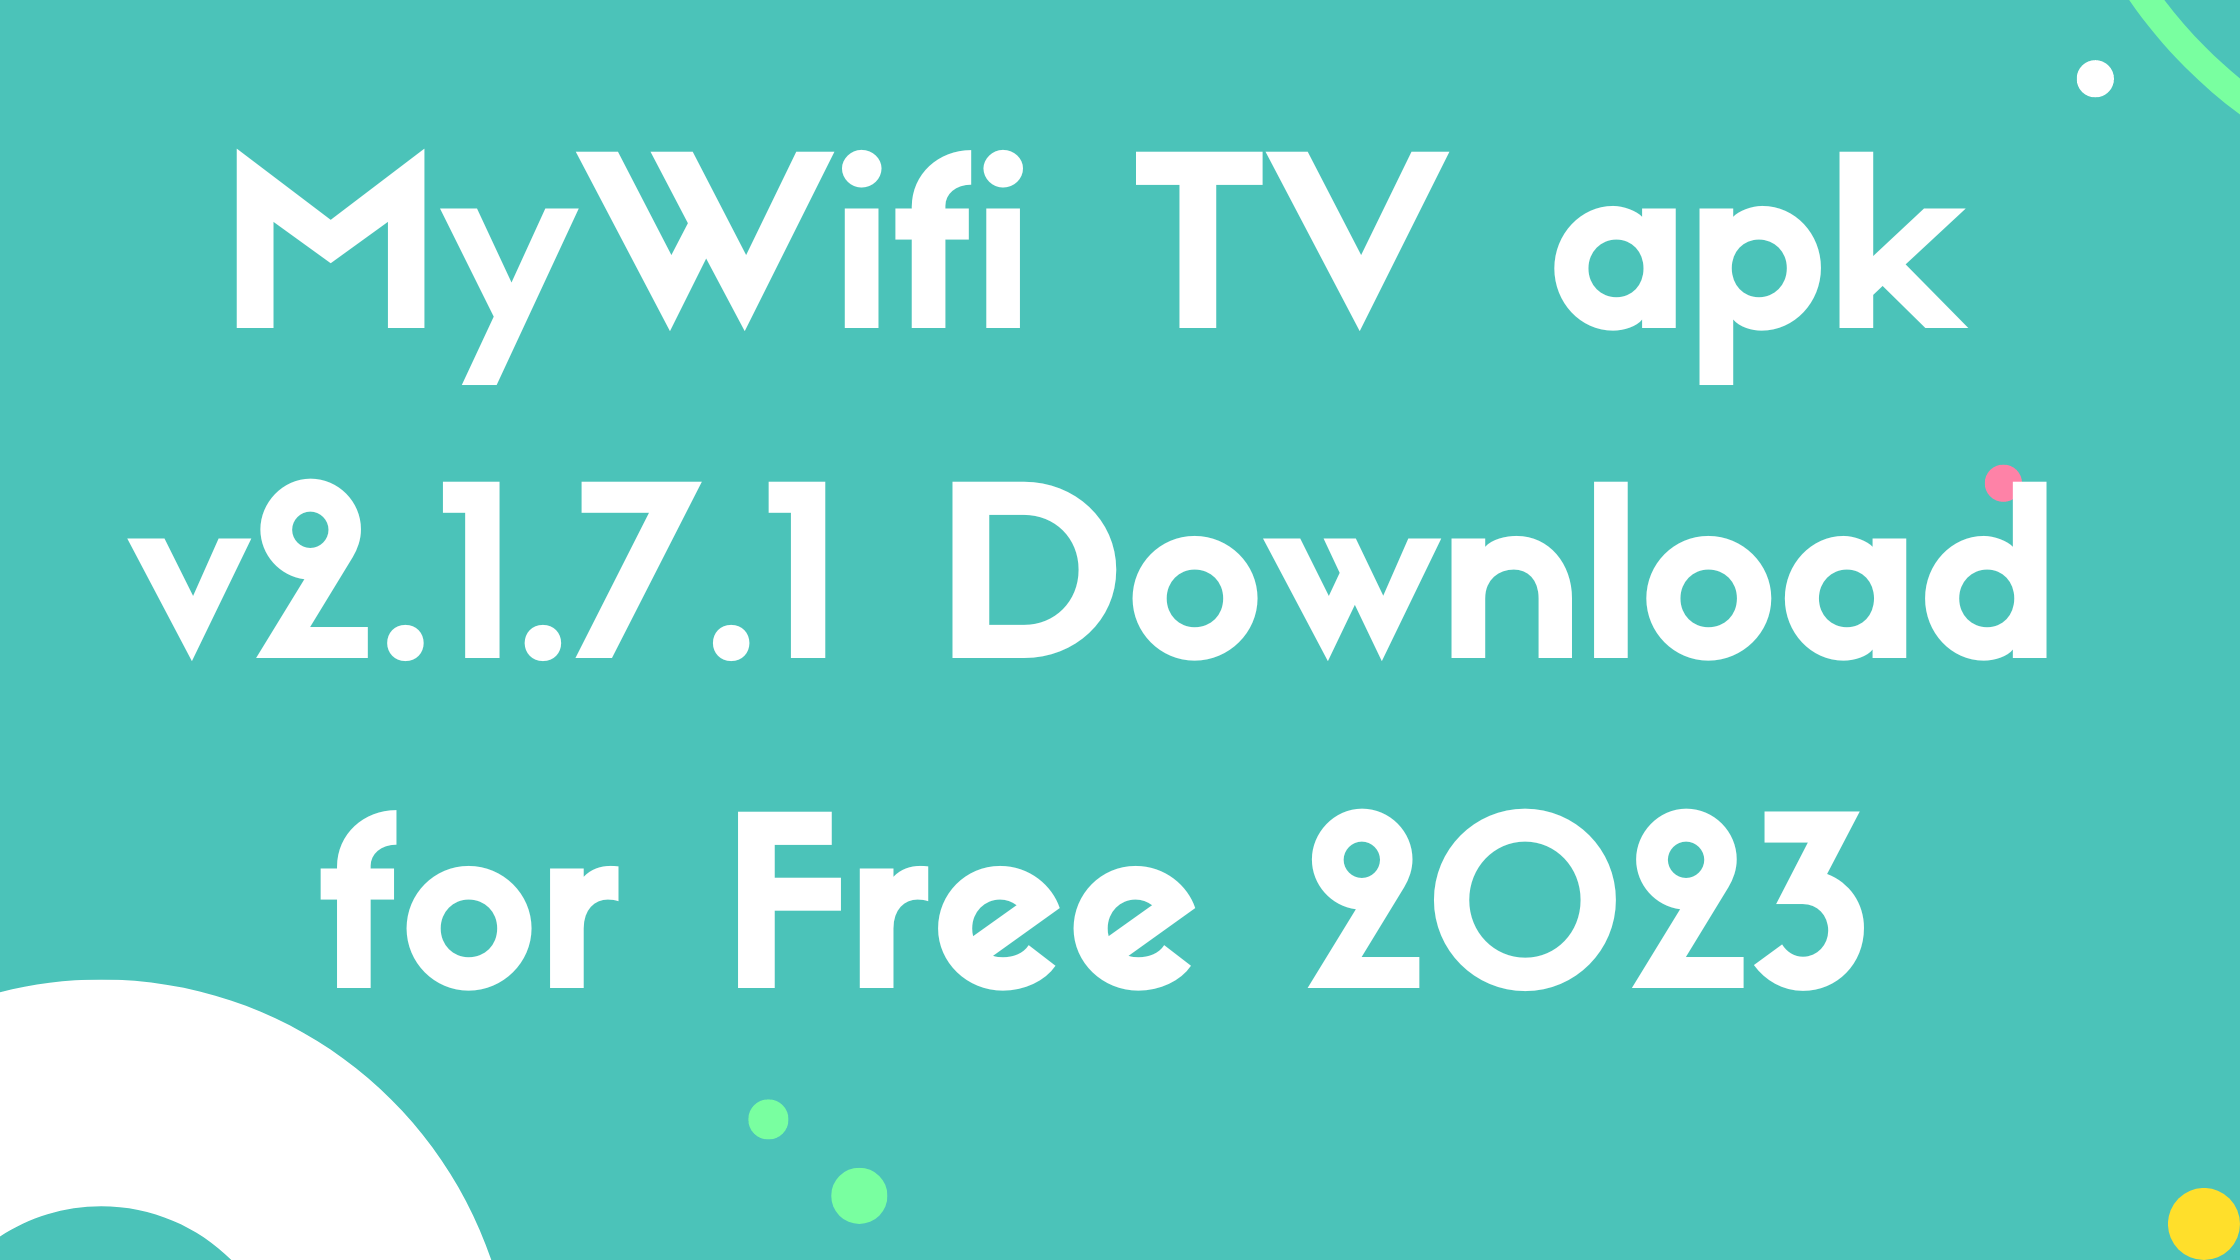 MyWifi TV apk v2.1.7.1 Download for Free 2023